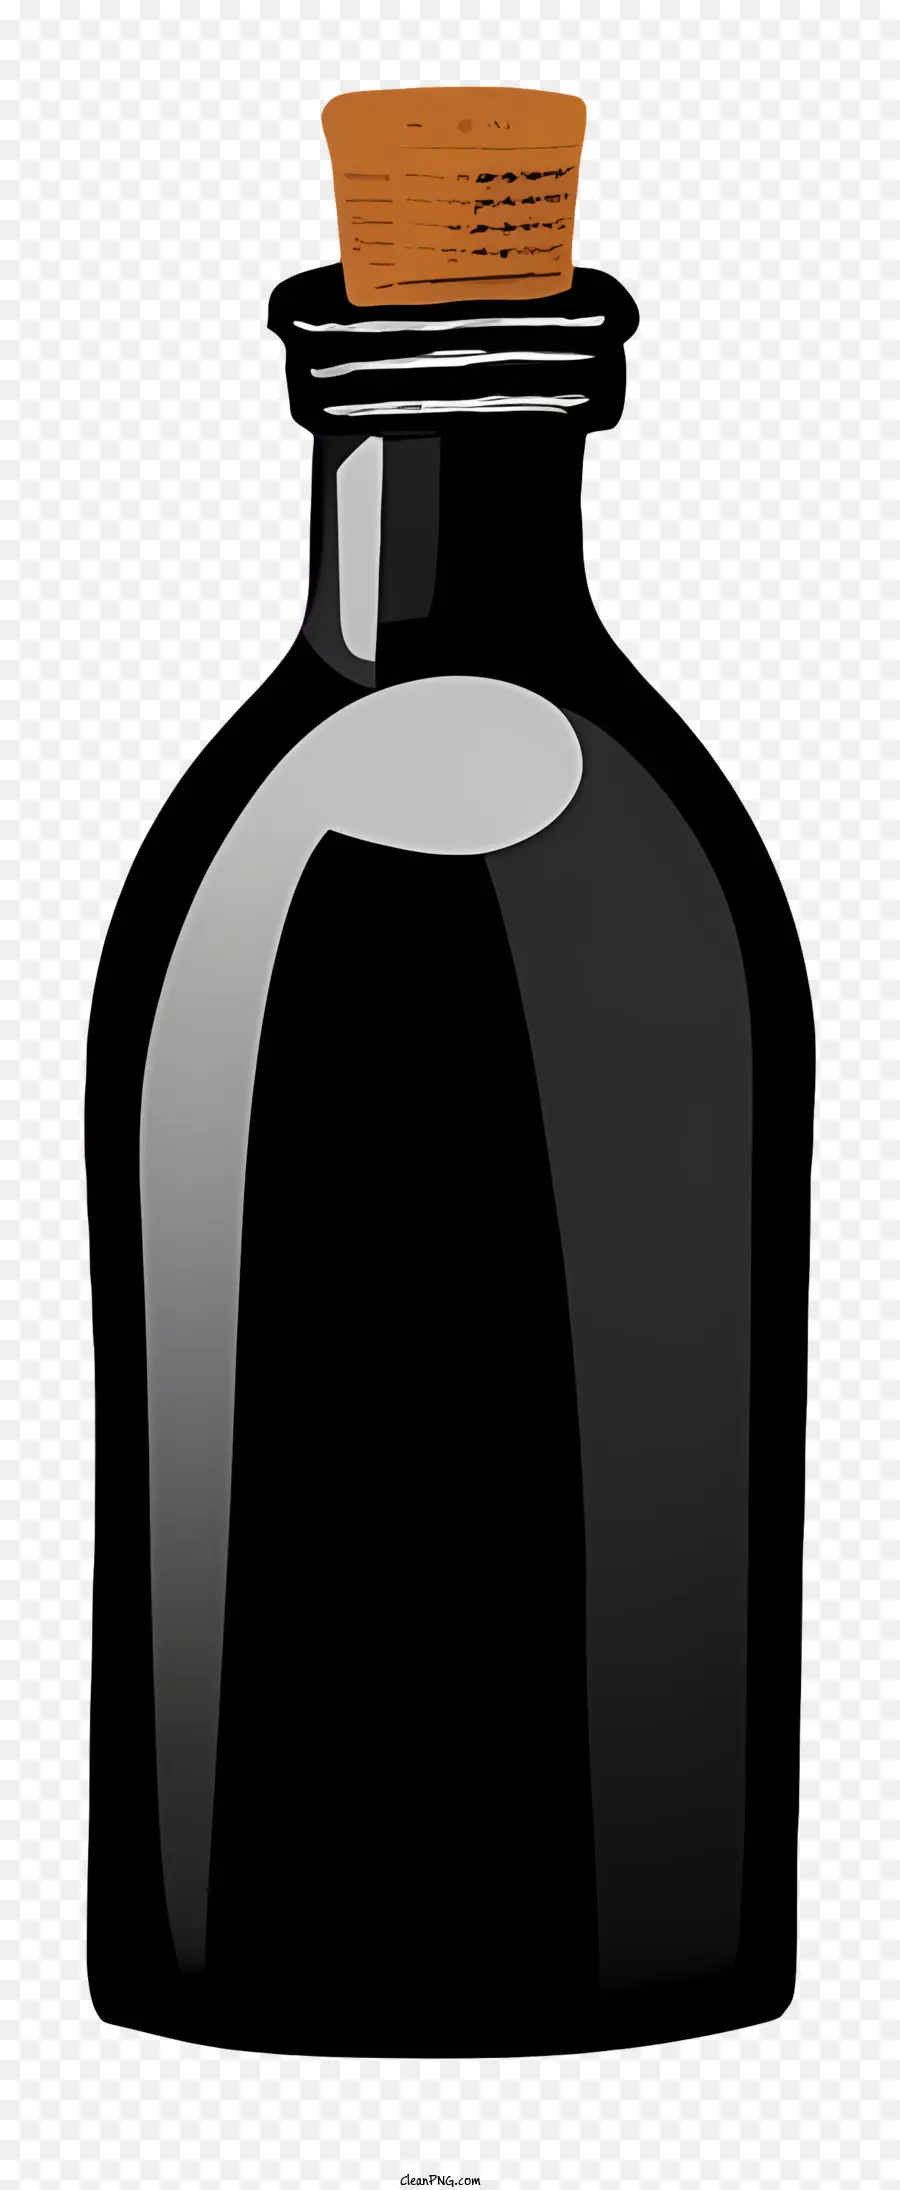 Cartoon Schwarz Glasflasche Kork obere braune Kappe Material kein Etikett - Schwarze Glasflasche mit Korkoberteil, einfachem und elegantem Design